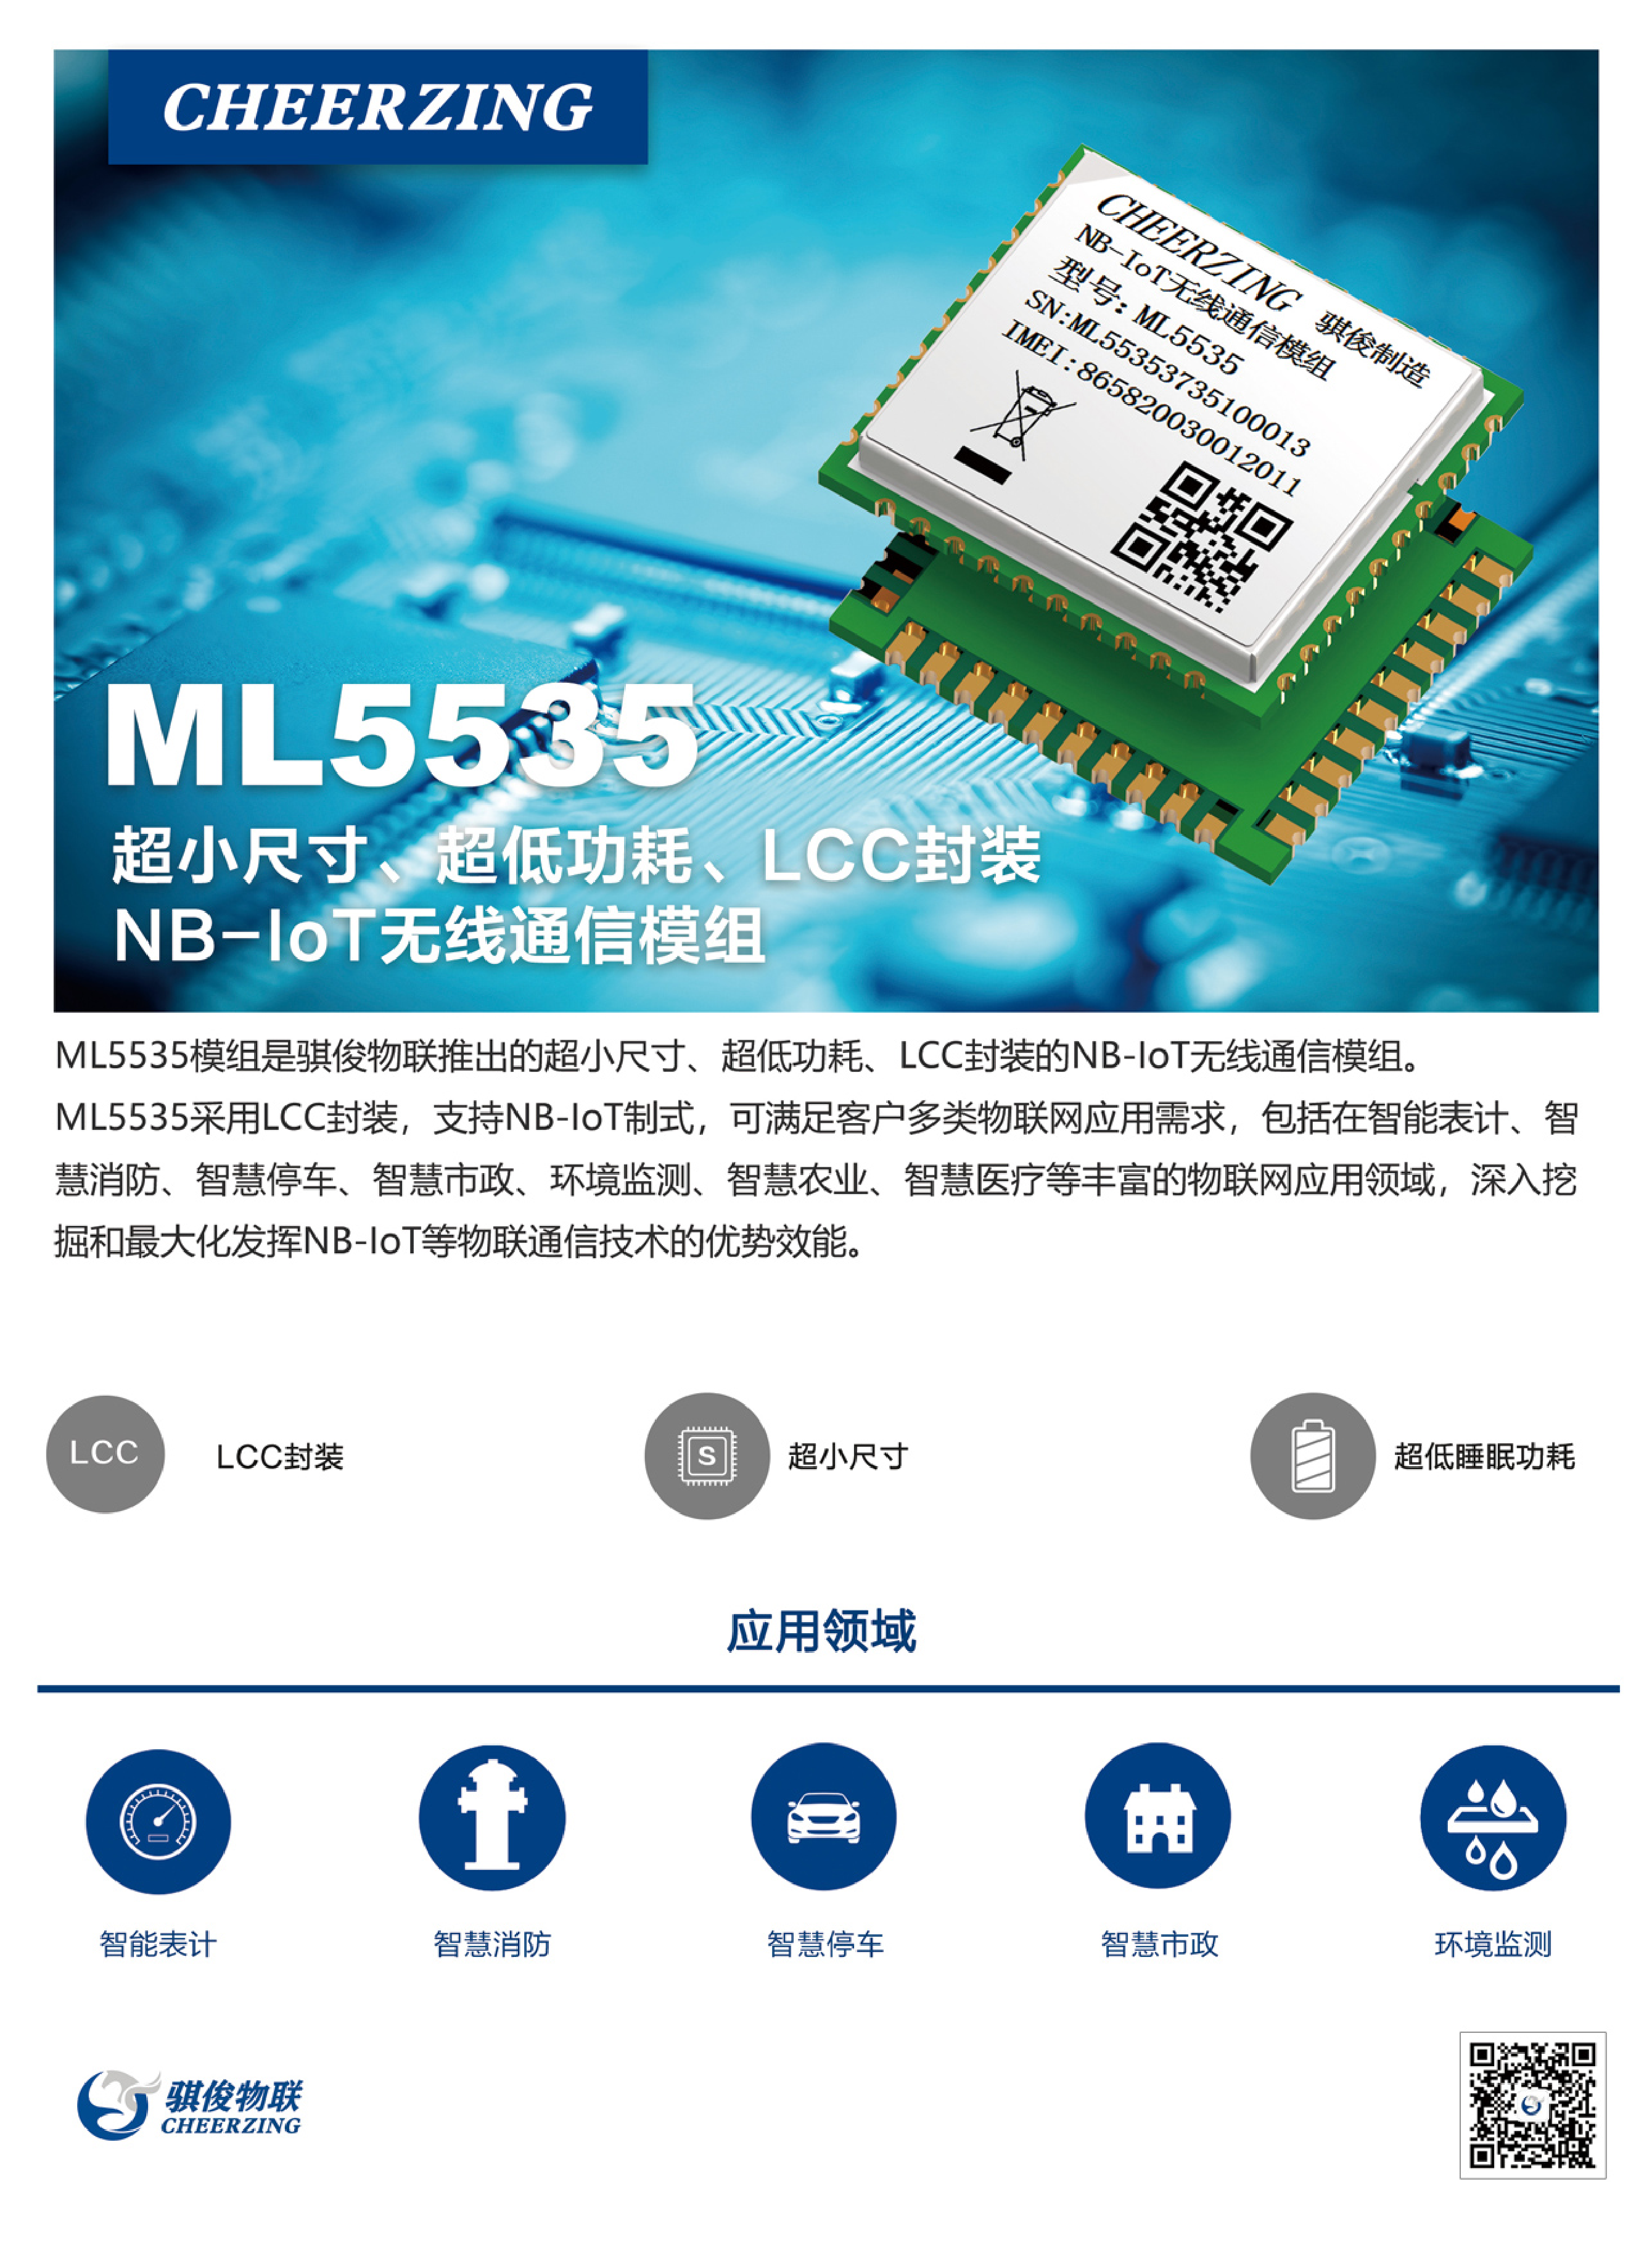 NB-IoT无线通信模组-ML5535图片